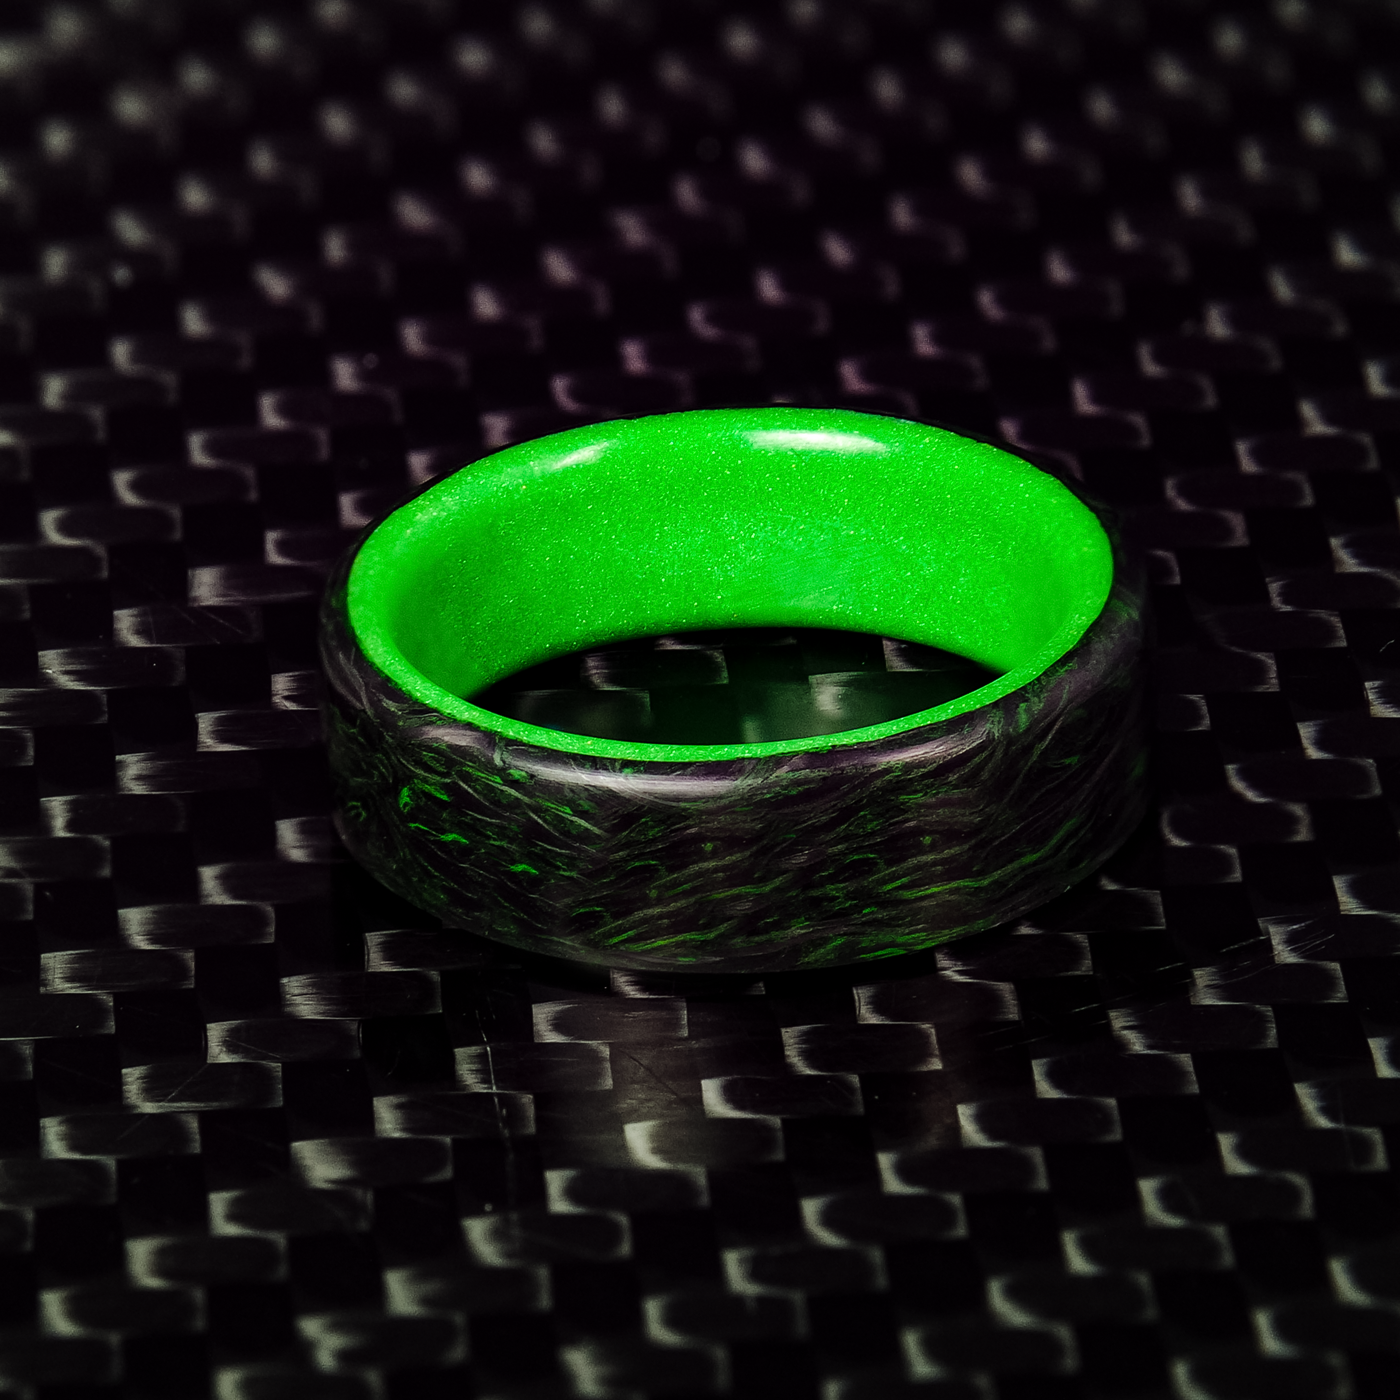 Green Burl Carbon Fiber Ring With Glow Liner - Patrick Adair Designs